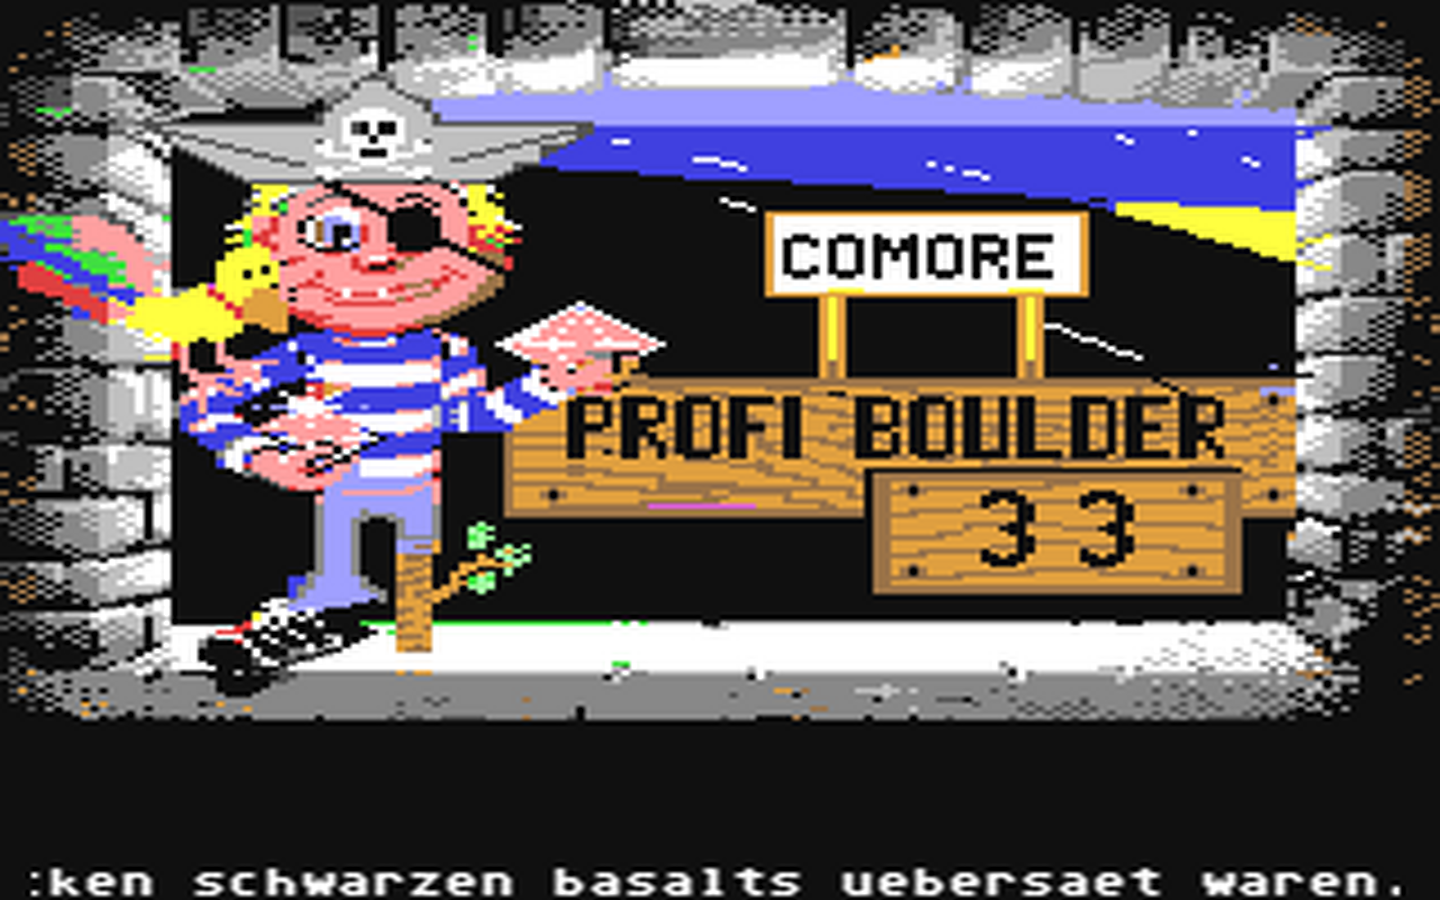 C64 GameBase Profi_Boulder_033 (Not_Published) 1992